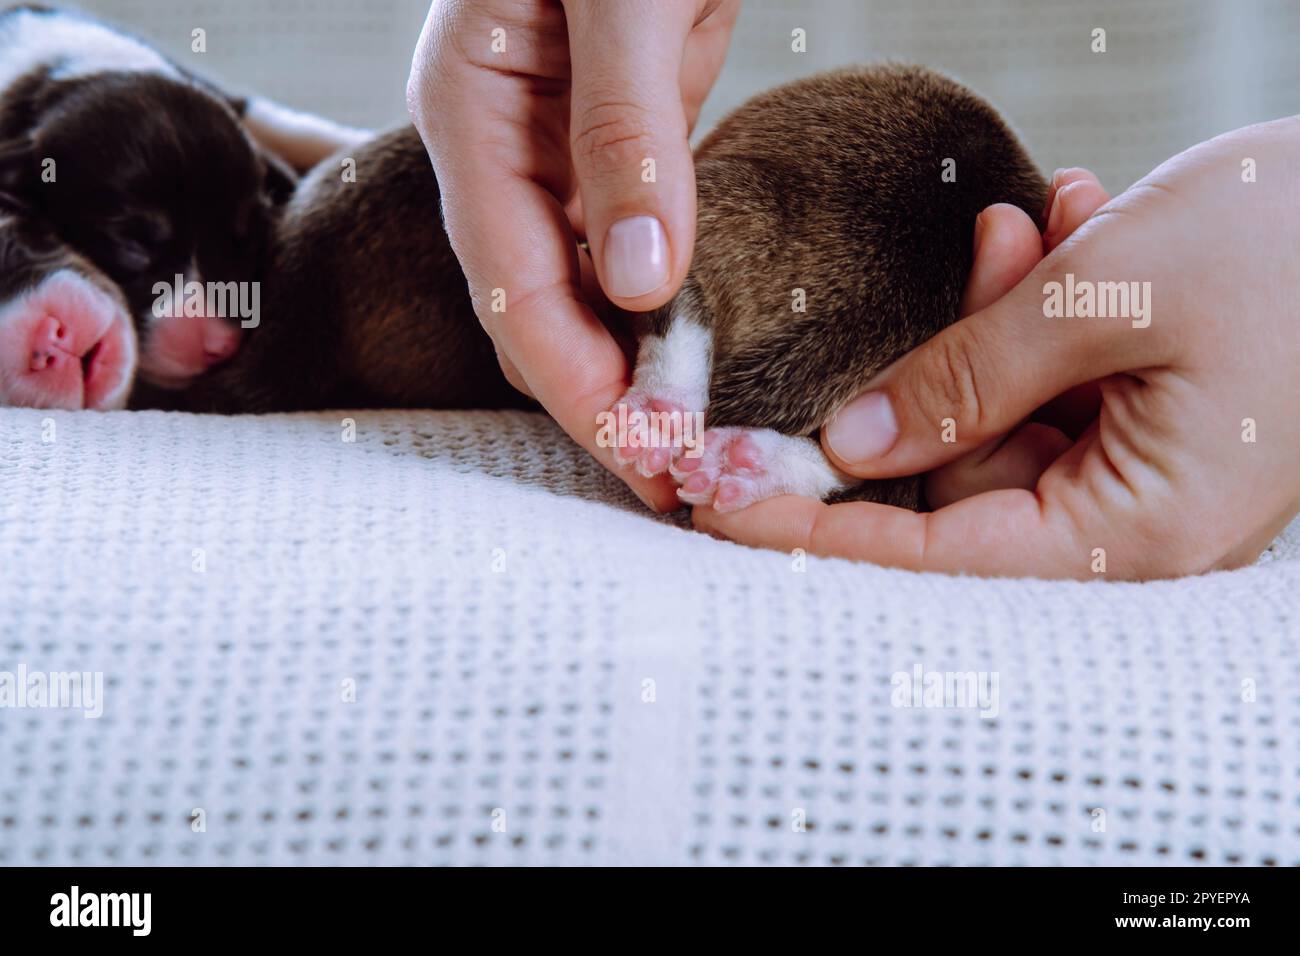 Les mains femelles recadrées tiennent soigneusement et montrent de minuscules pattes roses de chiot de chien corgi gallois, dorment sur une couverture blanche. Soins aux animaux Banque D'Images